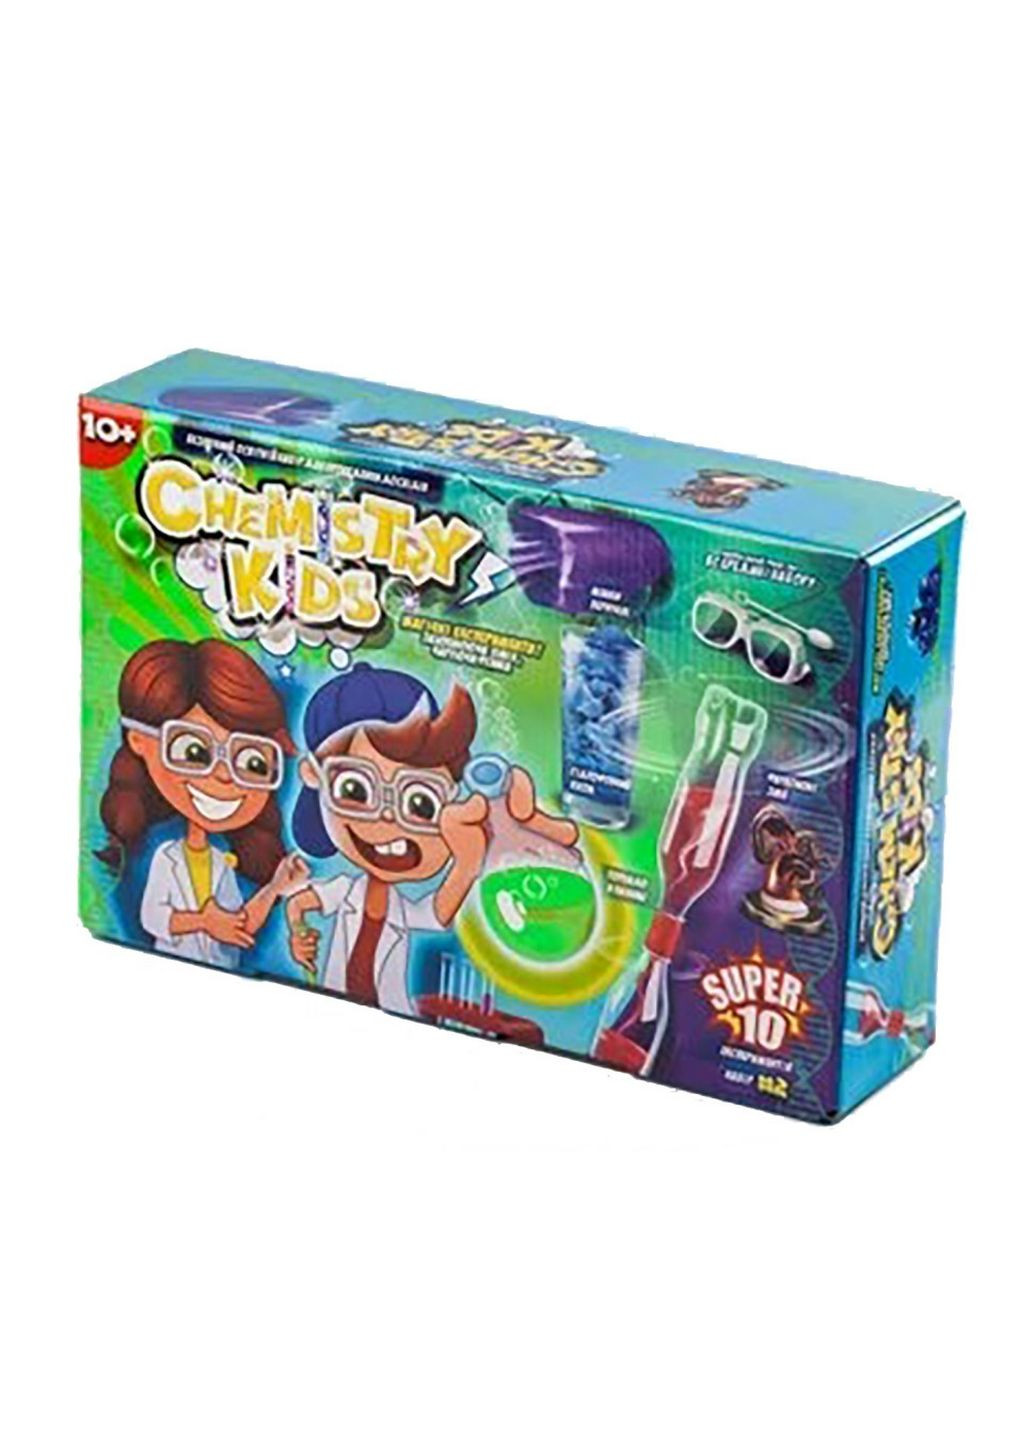 Безопасный образовательный набор для проведения опытов "chemistry kids" Danko Toys (282594358)